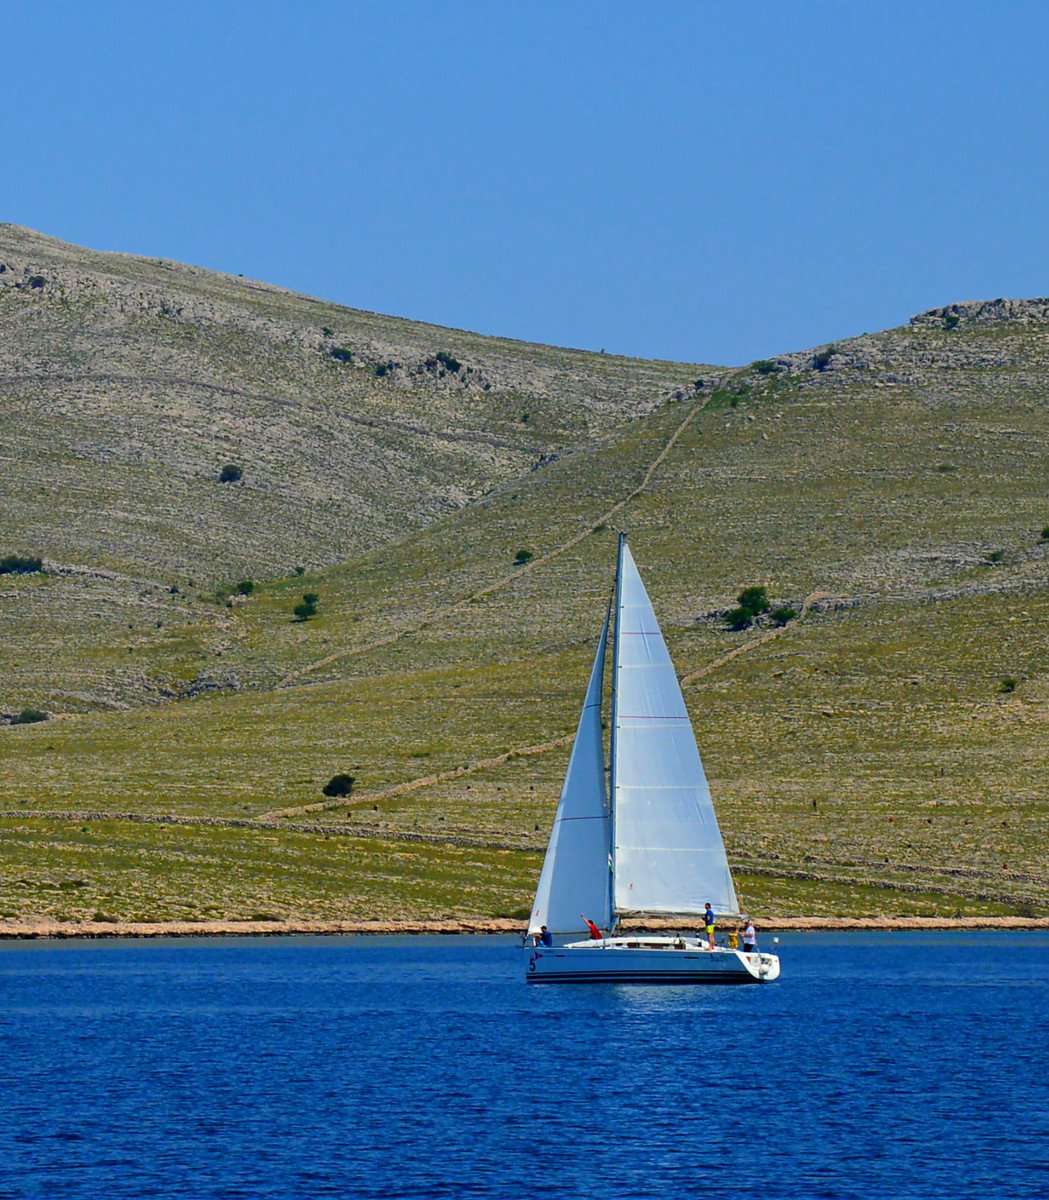 To visit Kornati islands charter a sailboat in Zadar